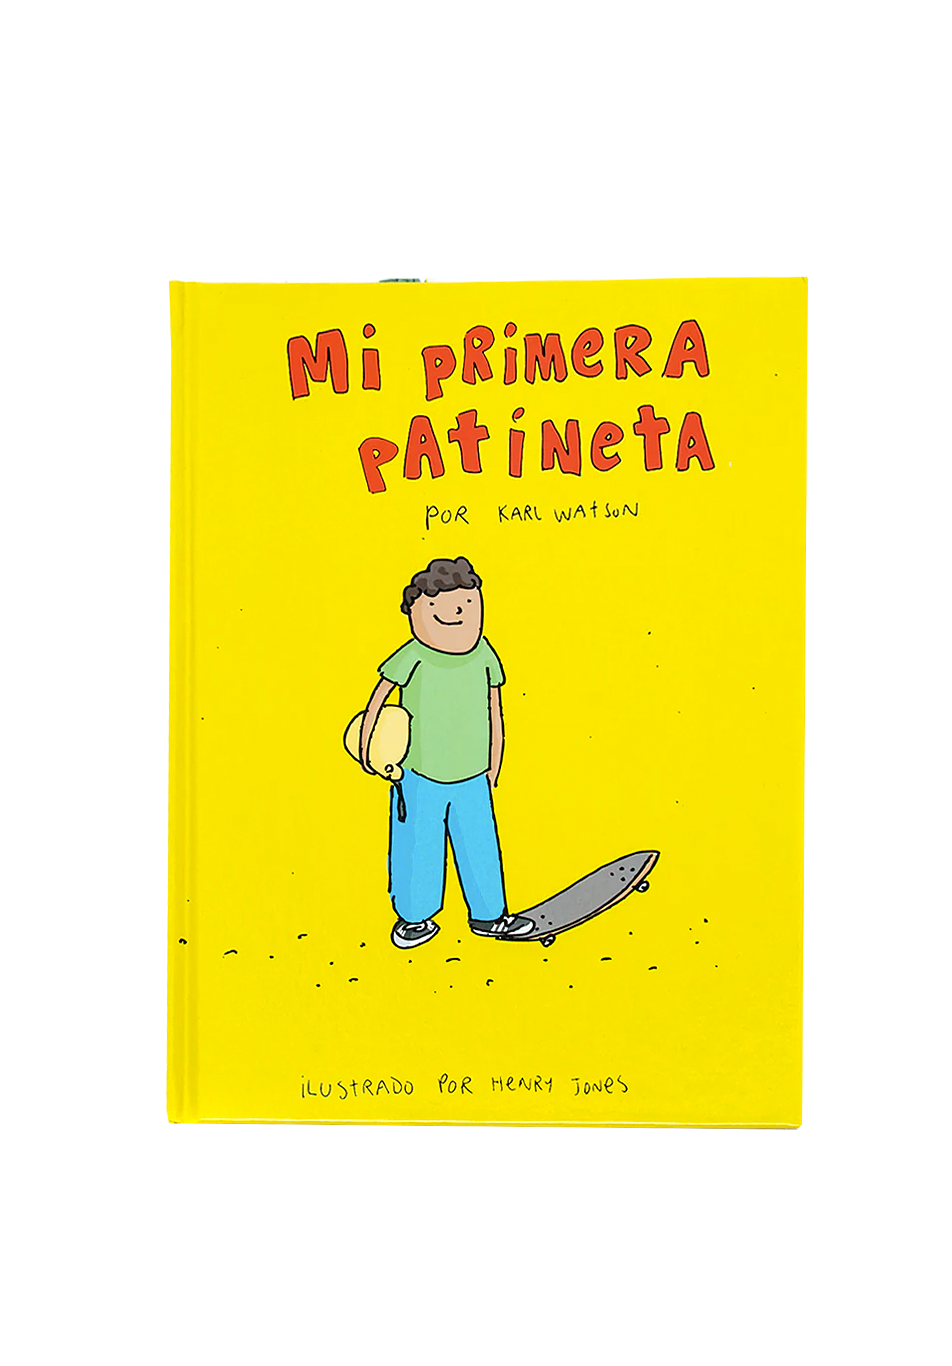 Mein erstes Skateboard-Buch, spanische Version